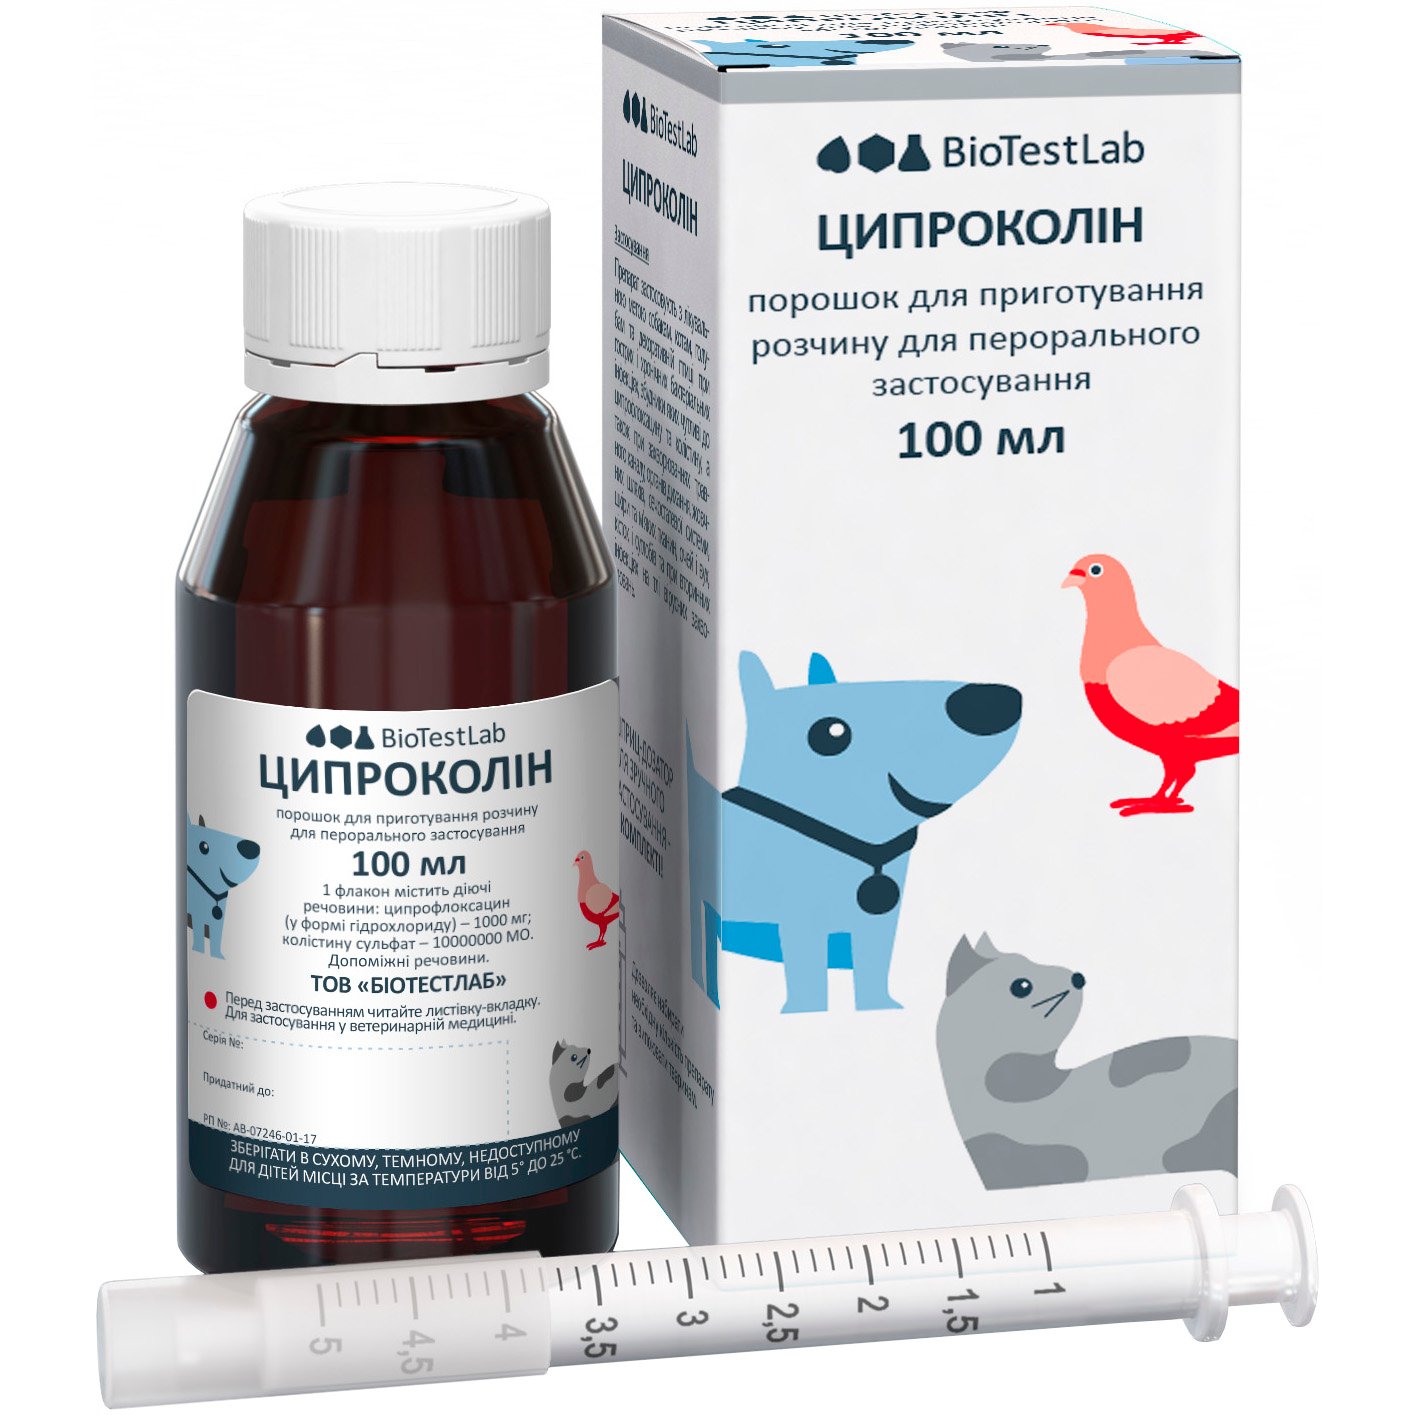 Антибіотик широкого спектра дії для тварин BioTestLab Ципроколін 100 мл - фото 1